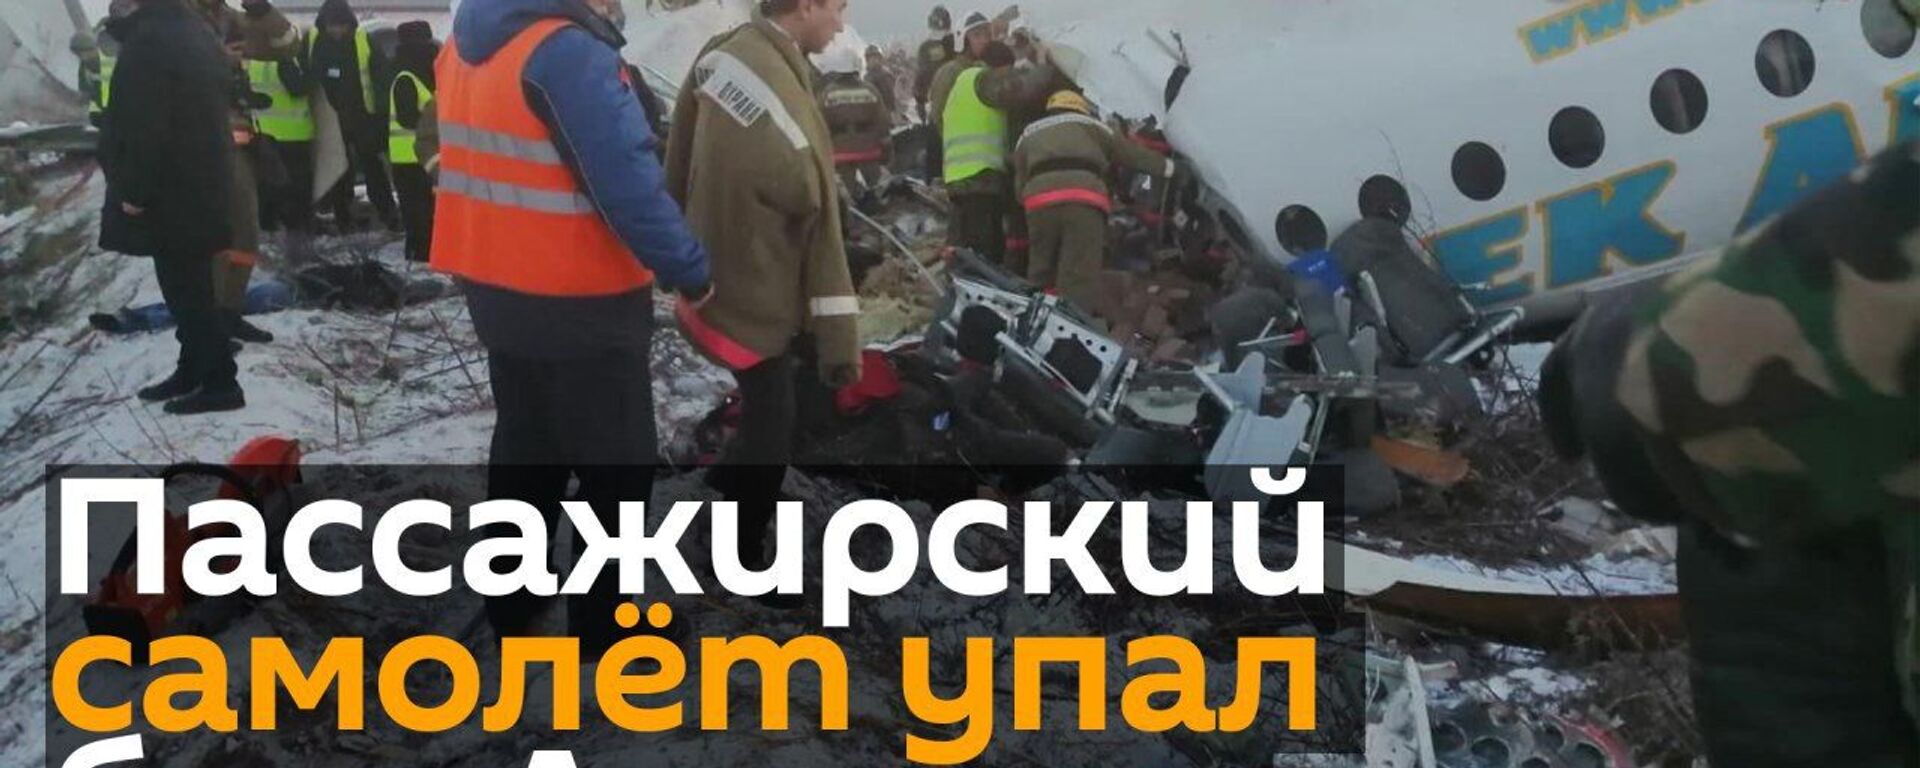 Пассажирский самолет рухнул в Алматы: 14 человек погибли - Sputnik Узбекистан, 1920, 27.12.2019